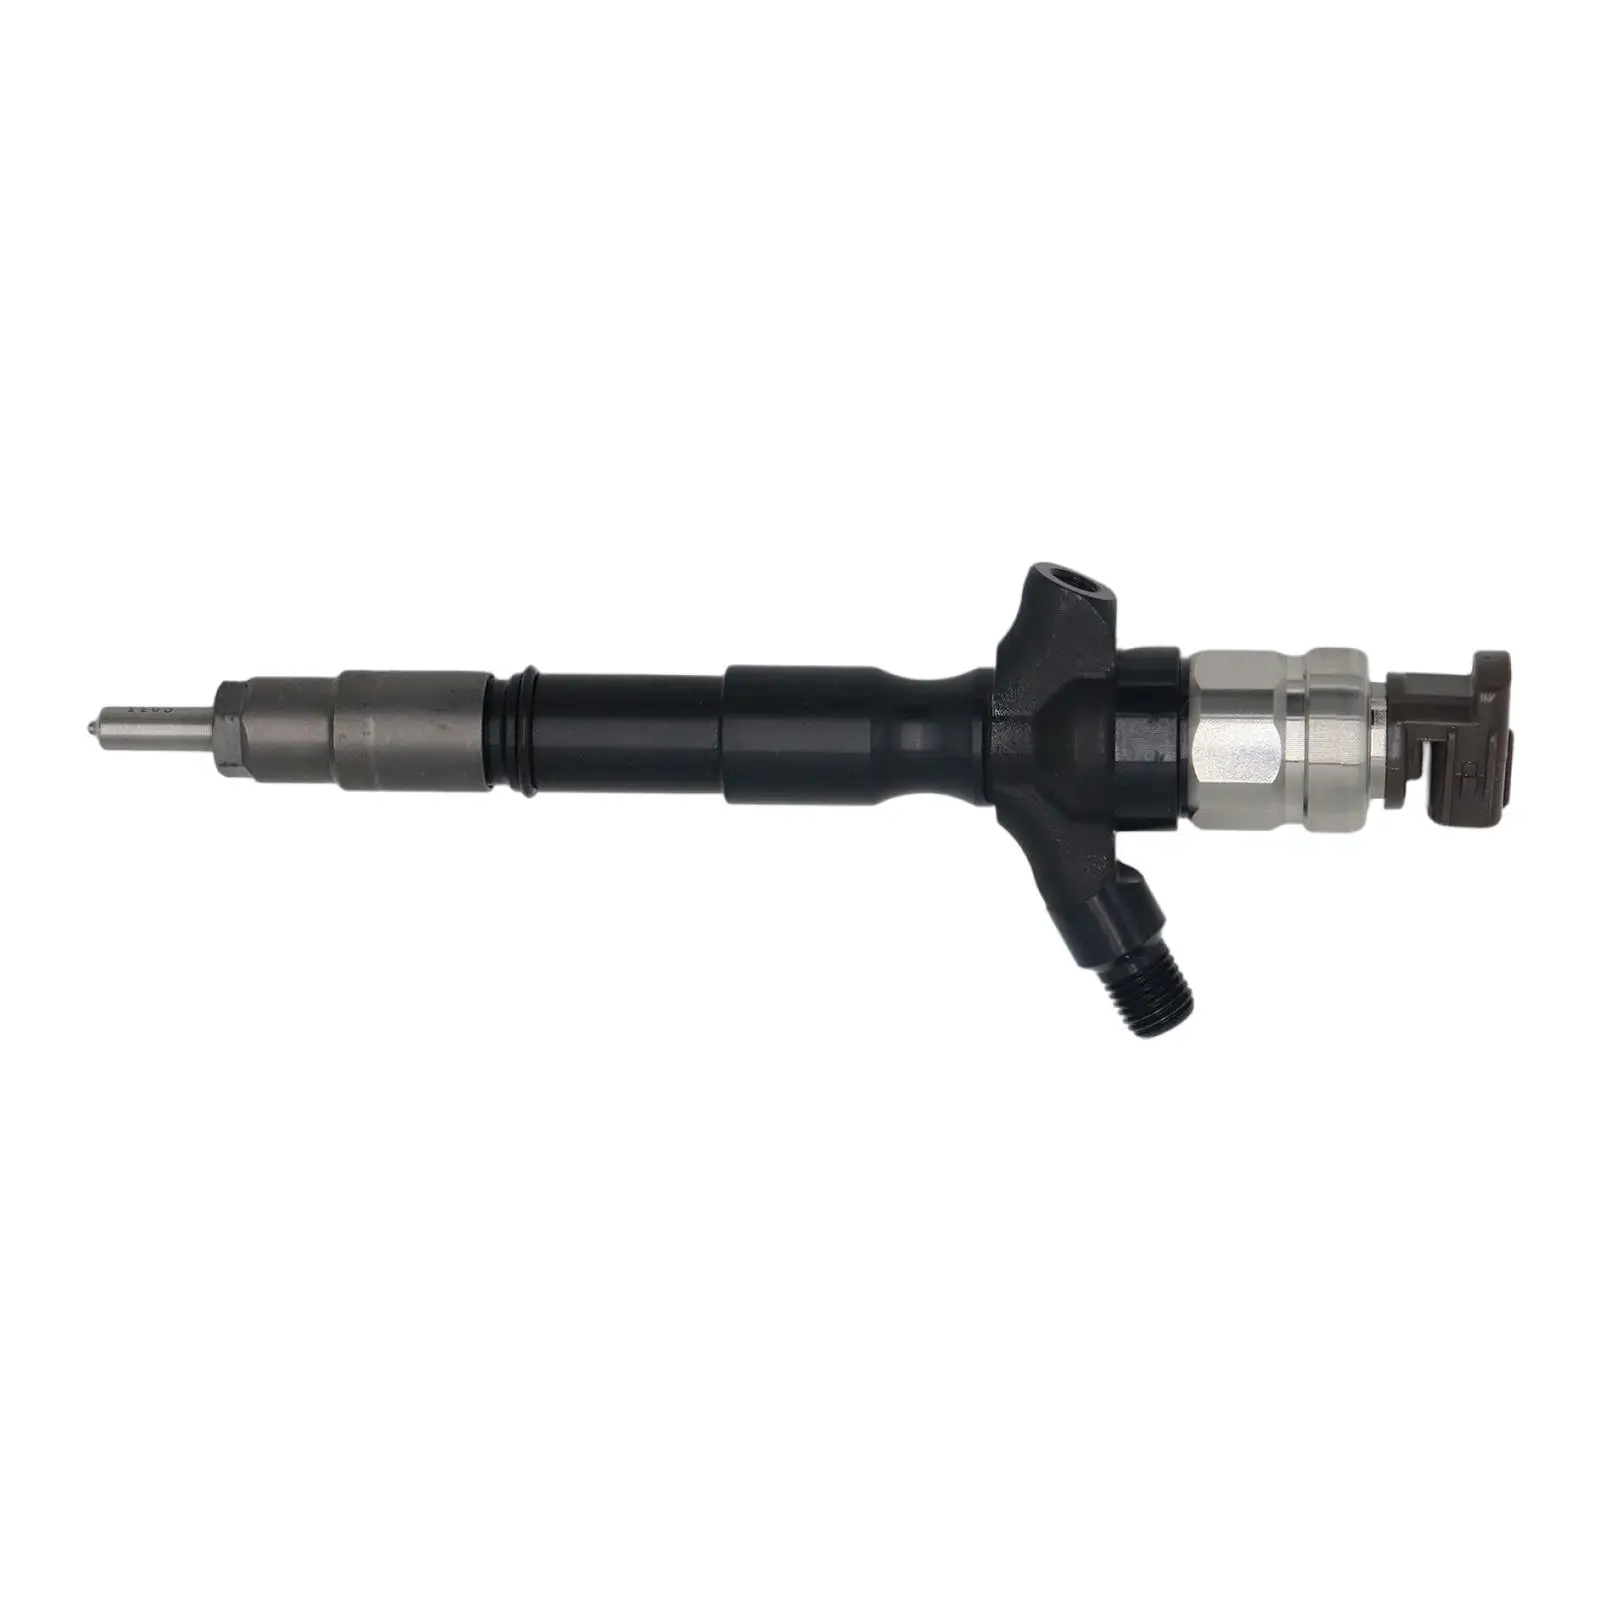 Fuel Injectors Nozzles Replaces Parts Car Parts Engine Parts for Toyota Kun26 Hilux 3.0L 2005-2010 D4D 1Kd-Ftv 23670-0L020